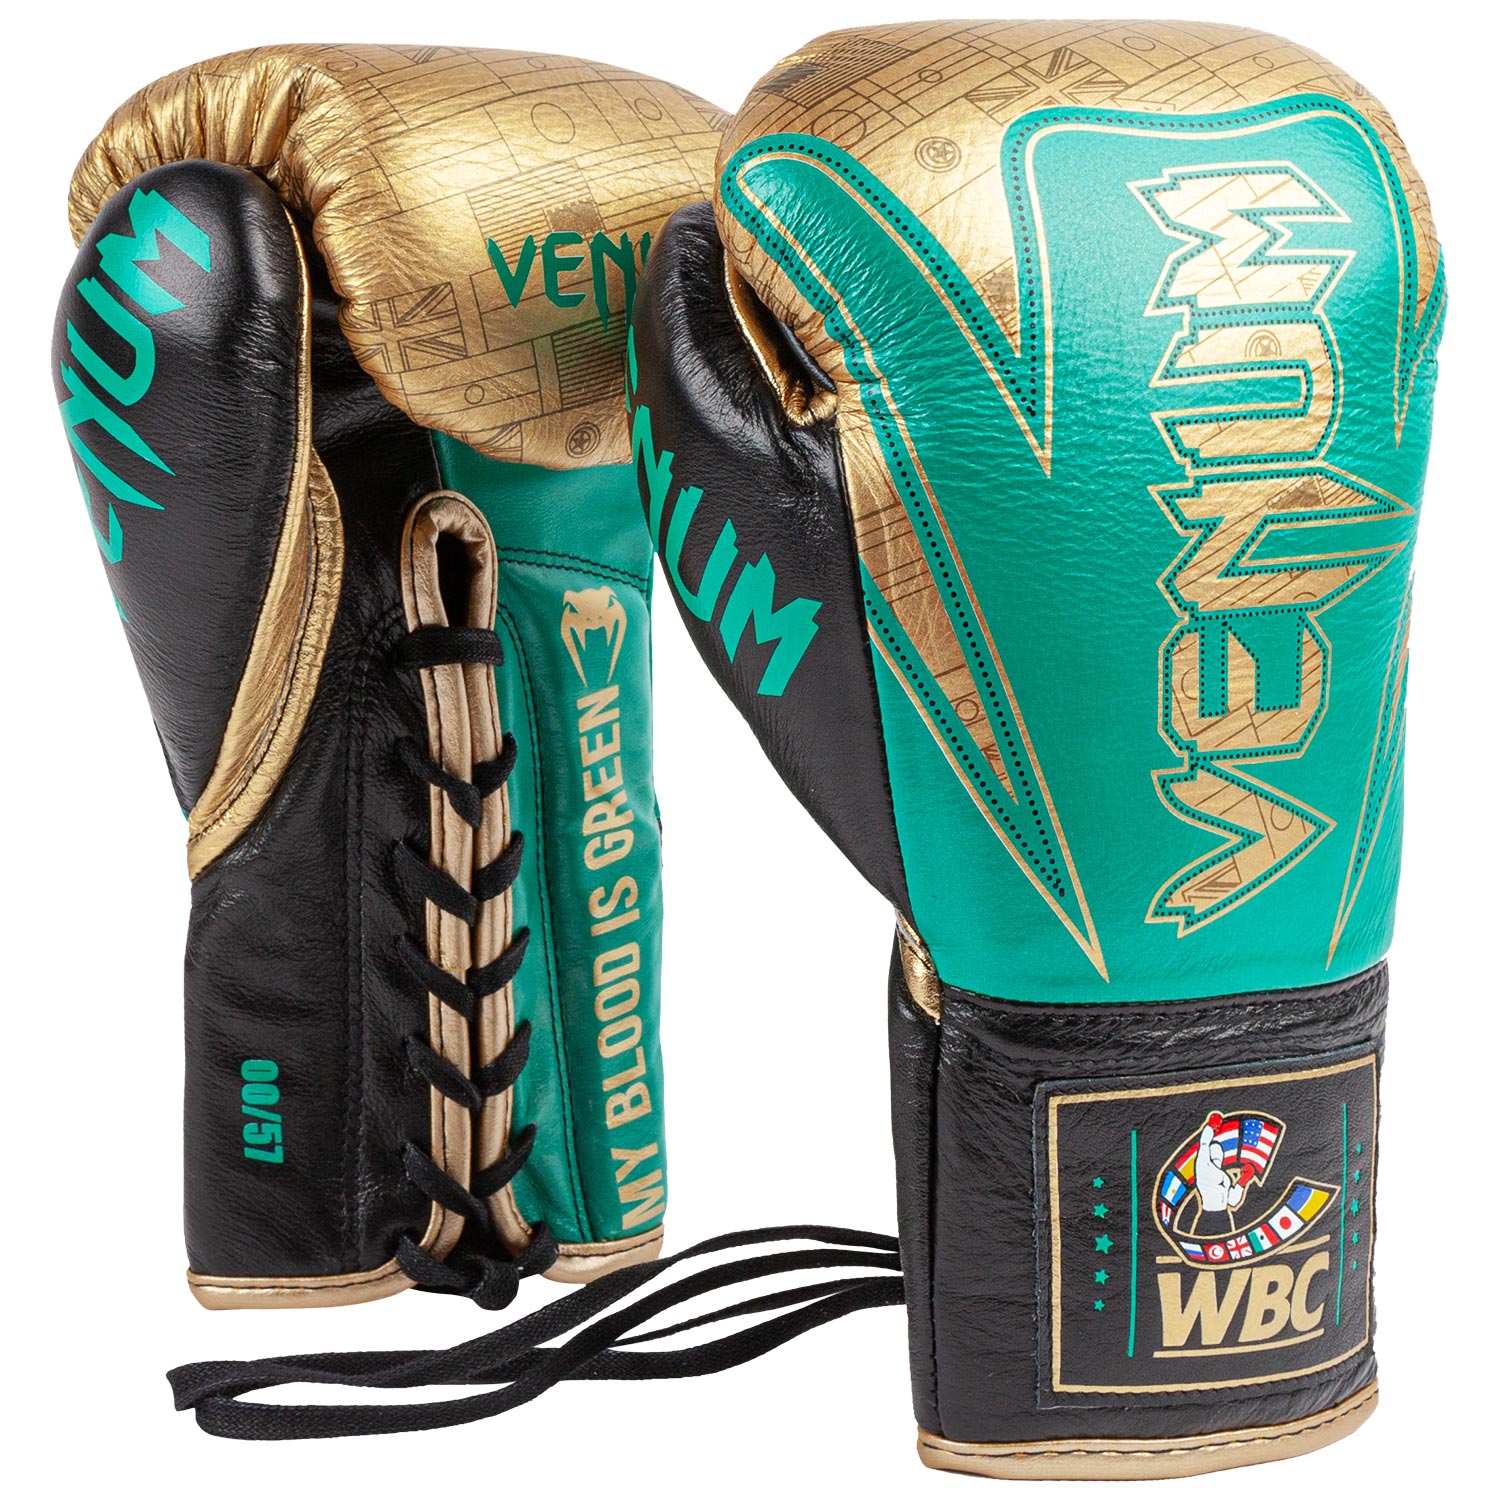 Venum Boxhandschuhe - M – Auflage HAMMER limitierte Venum WBC Schweiz - professionelle